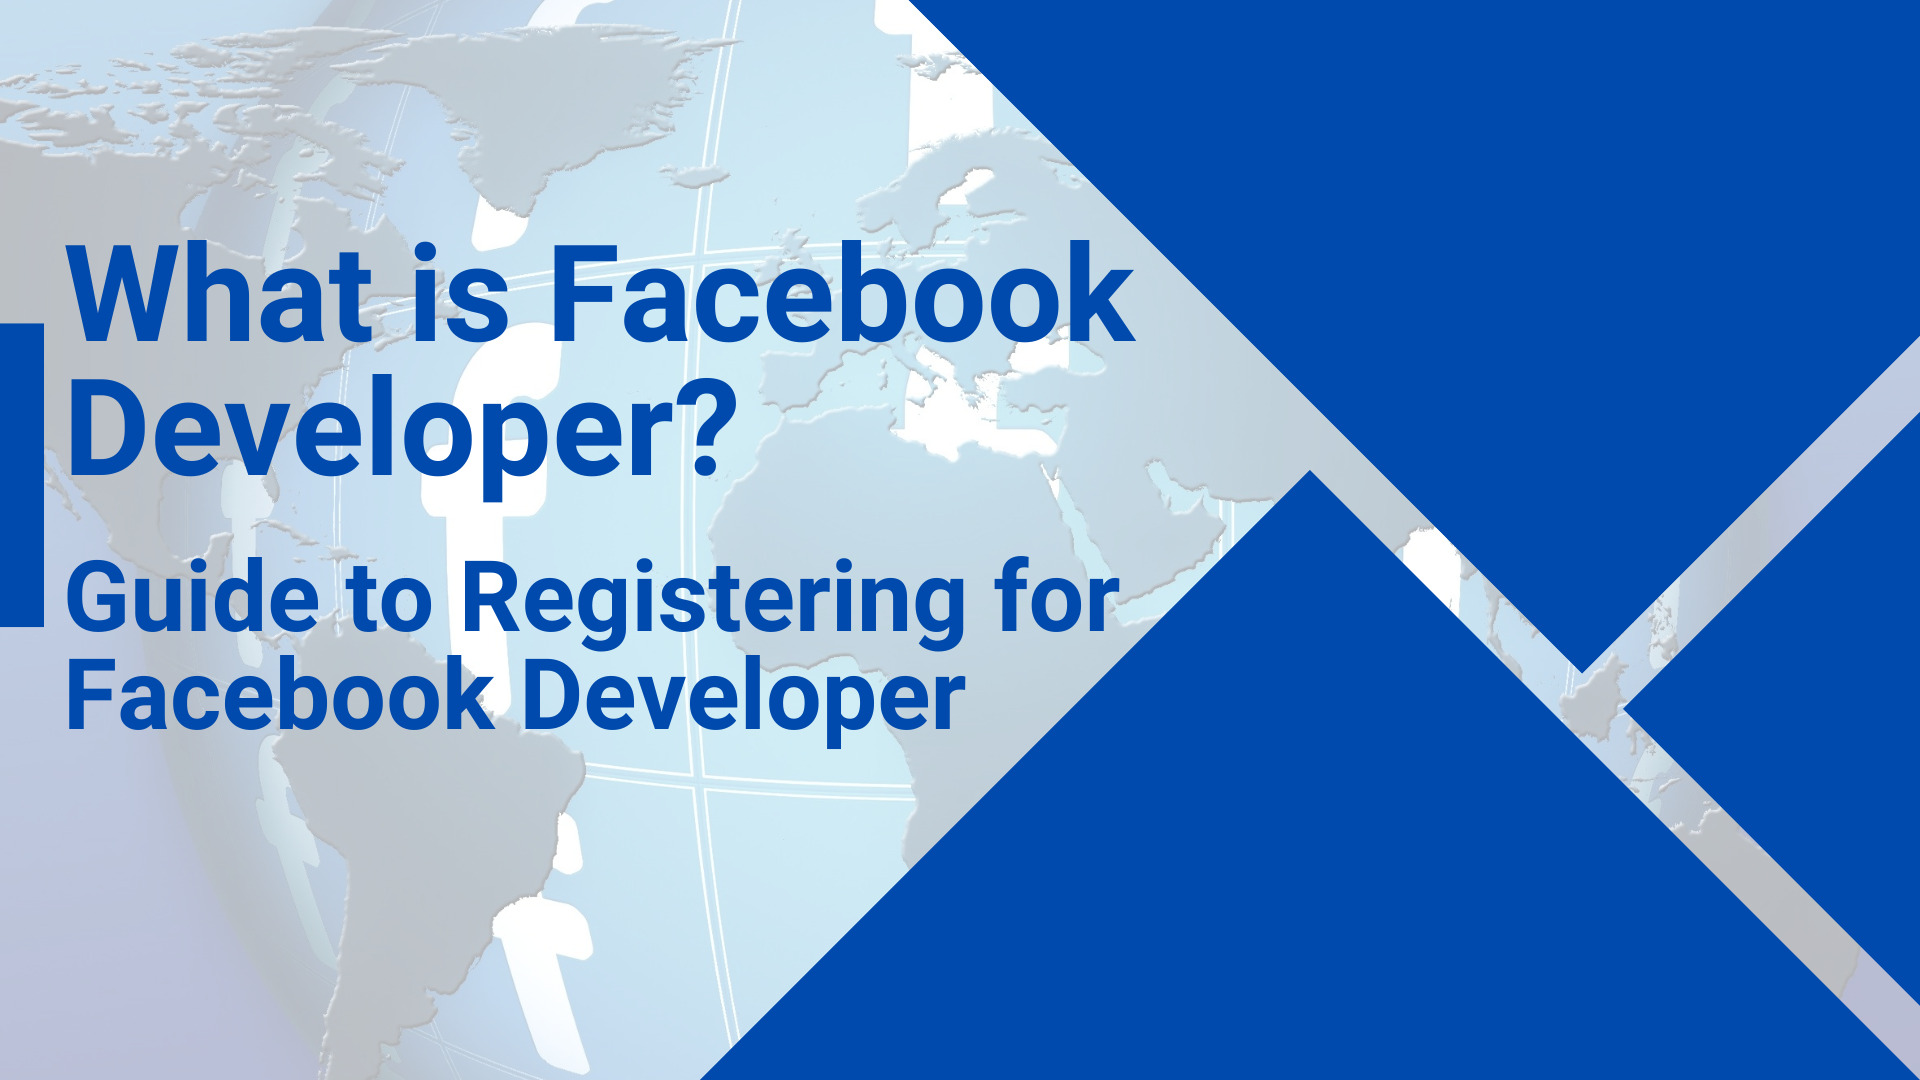 What is Facebook Developer? Guide to Registering for Facebook Developer